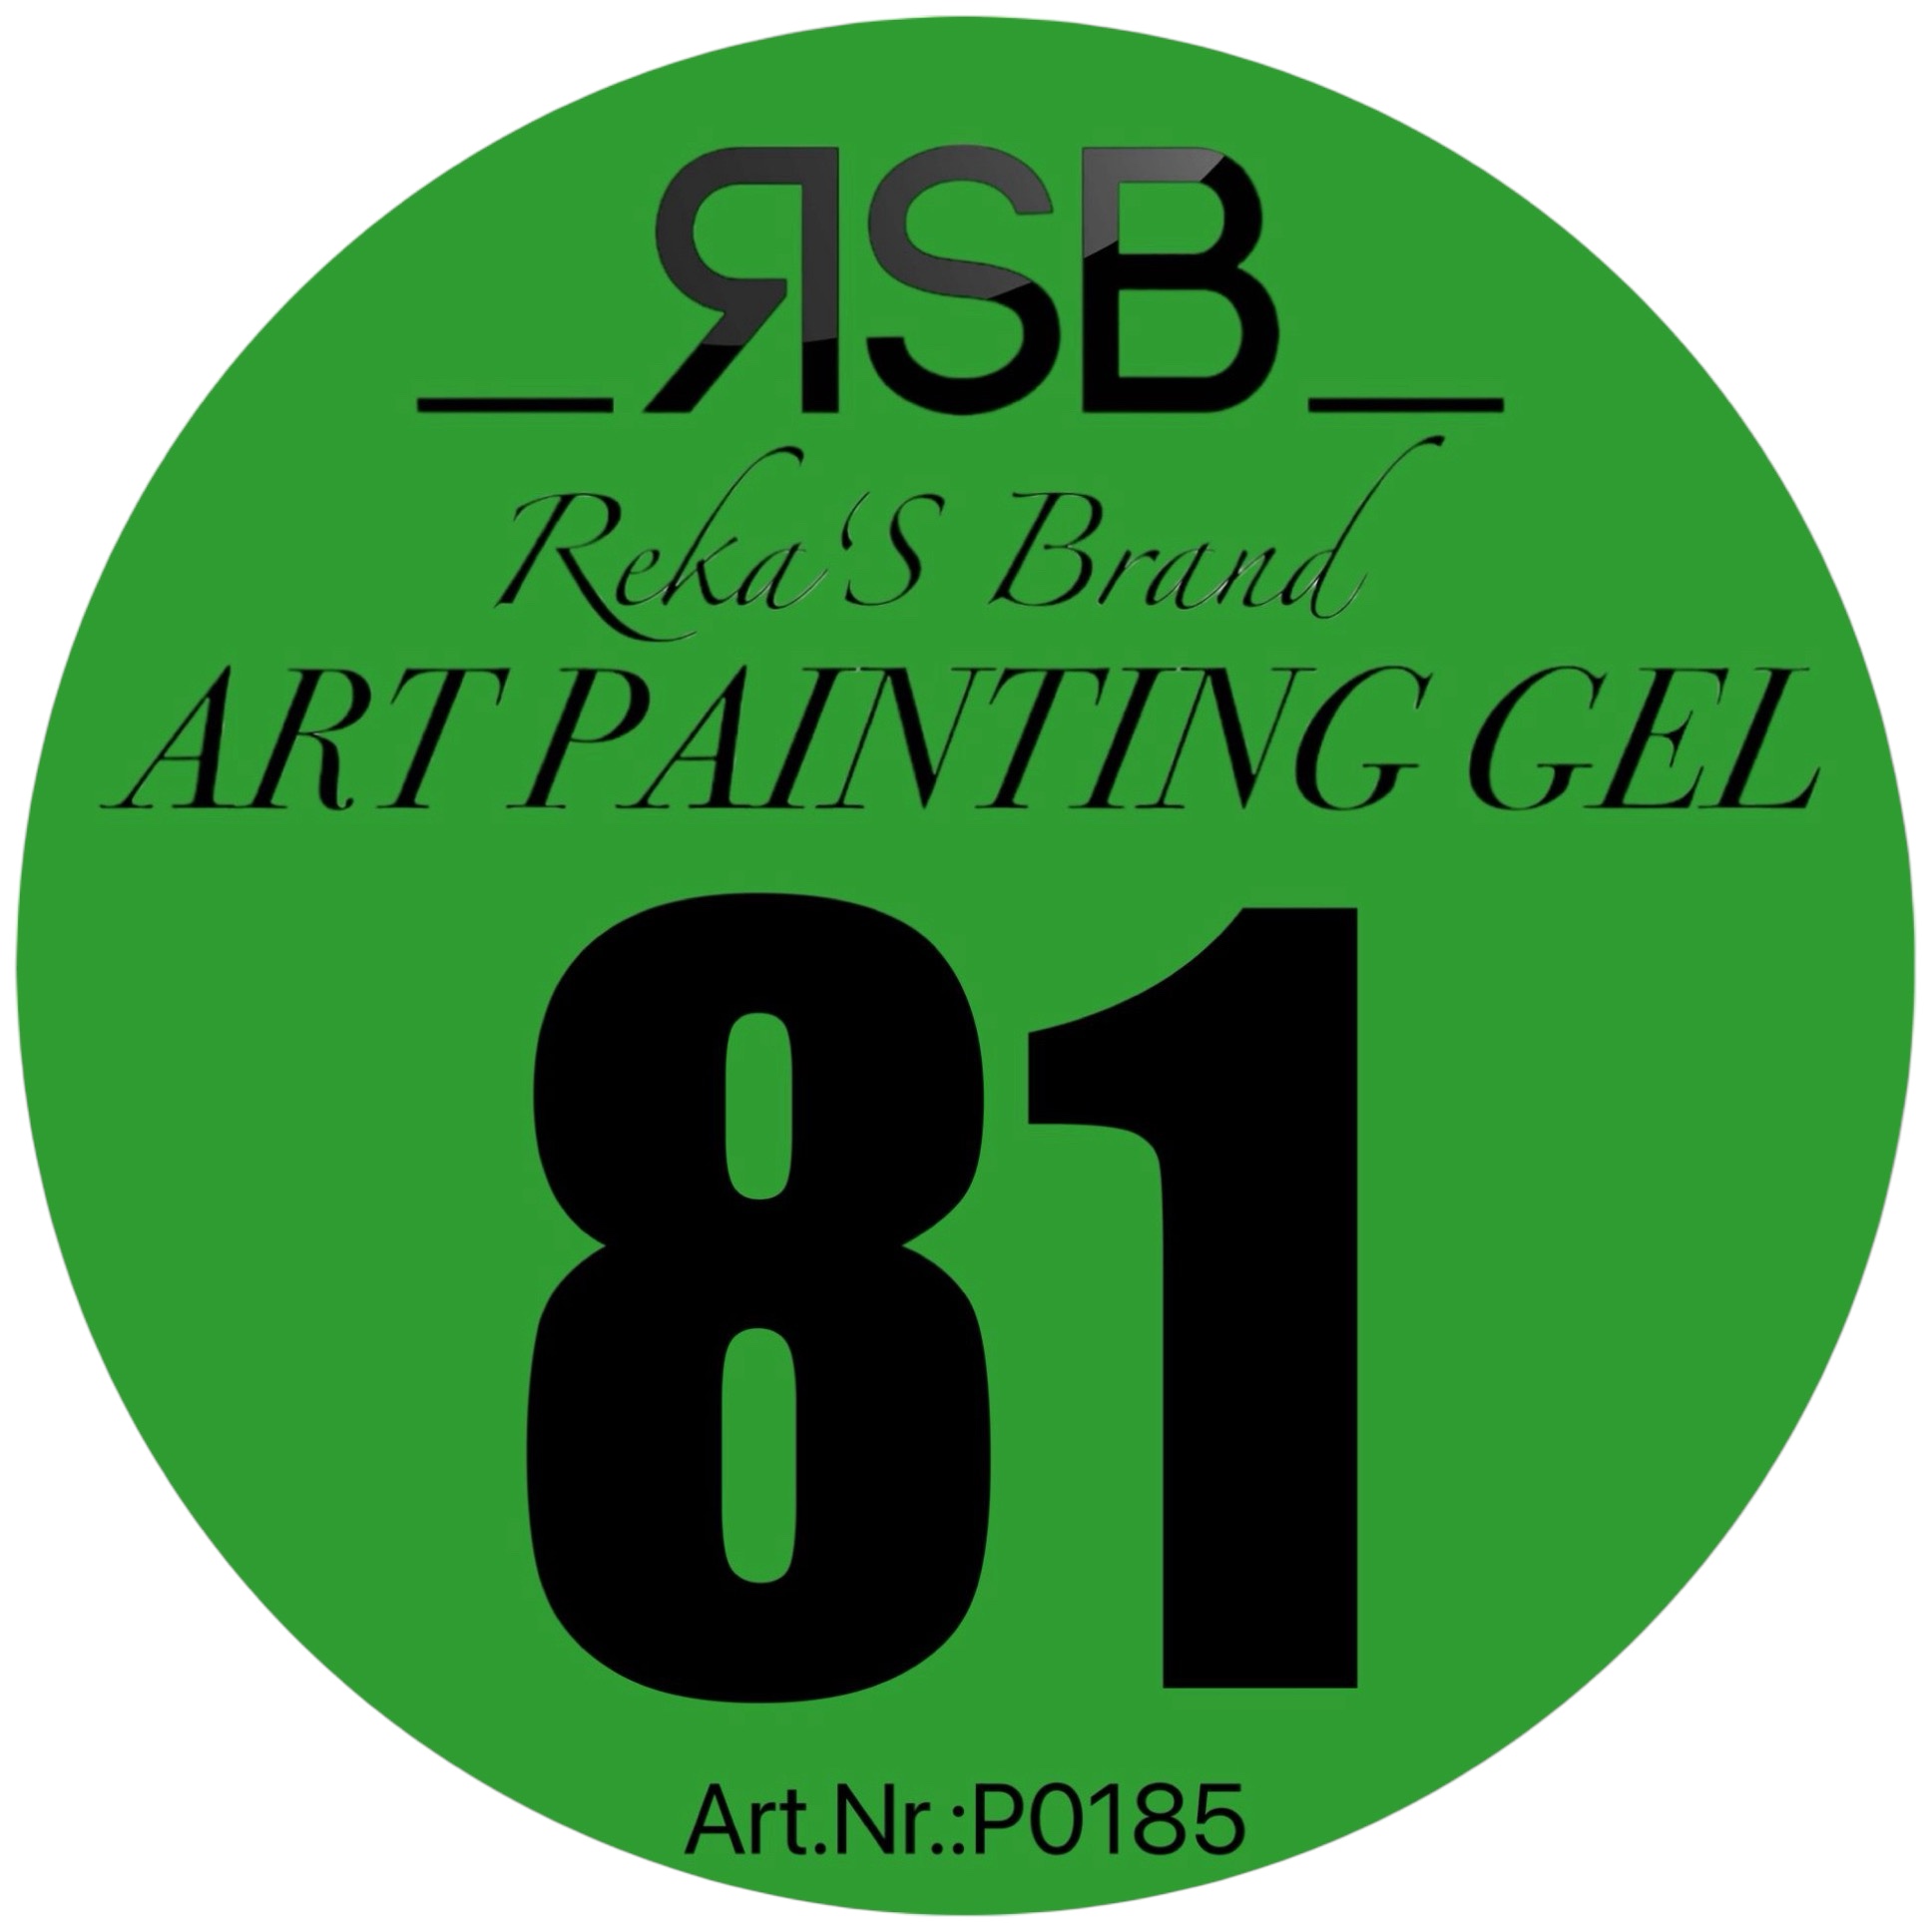 ART PAINTING GEL 81